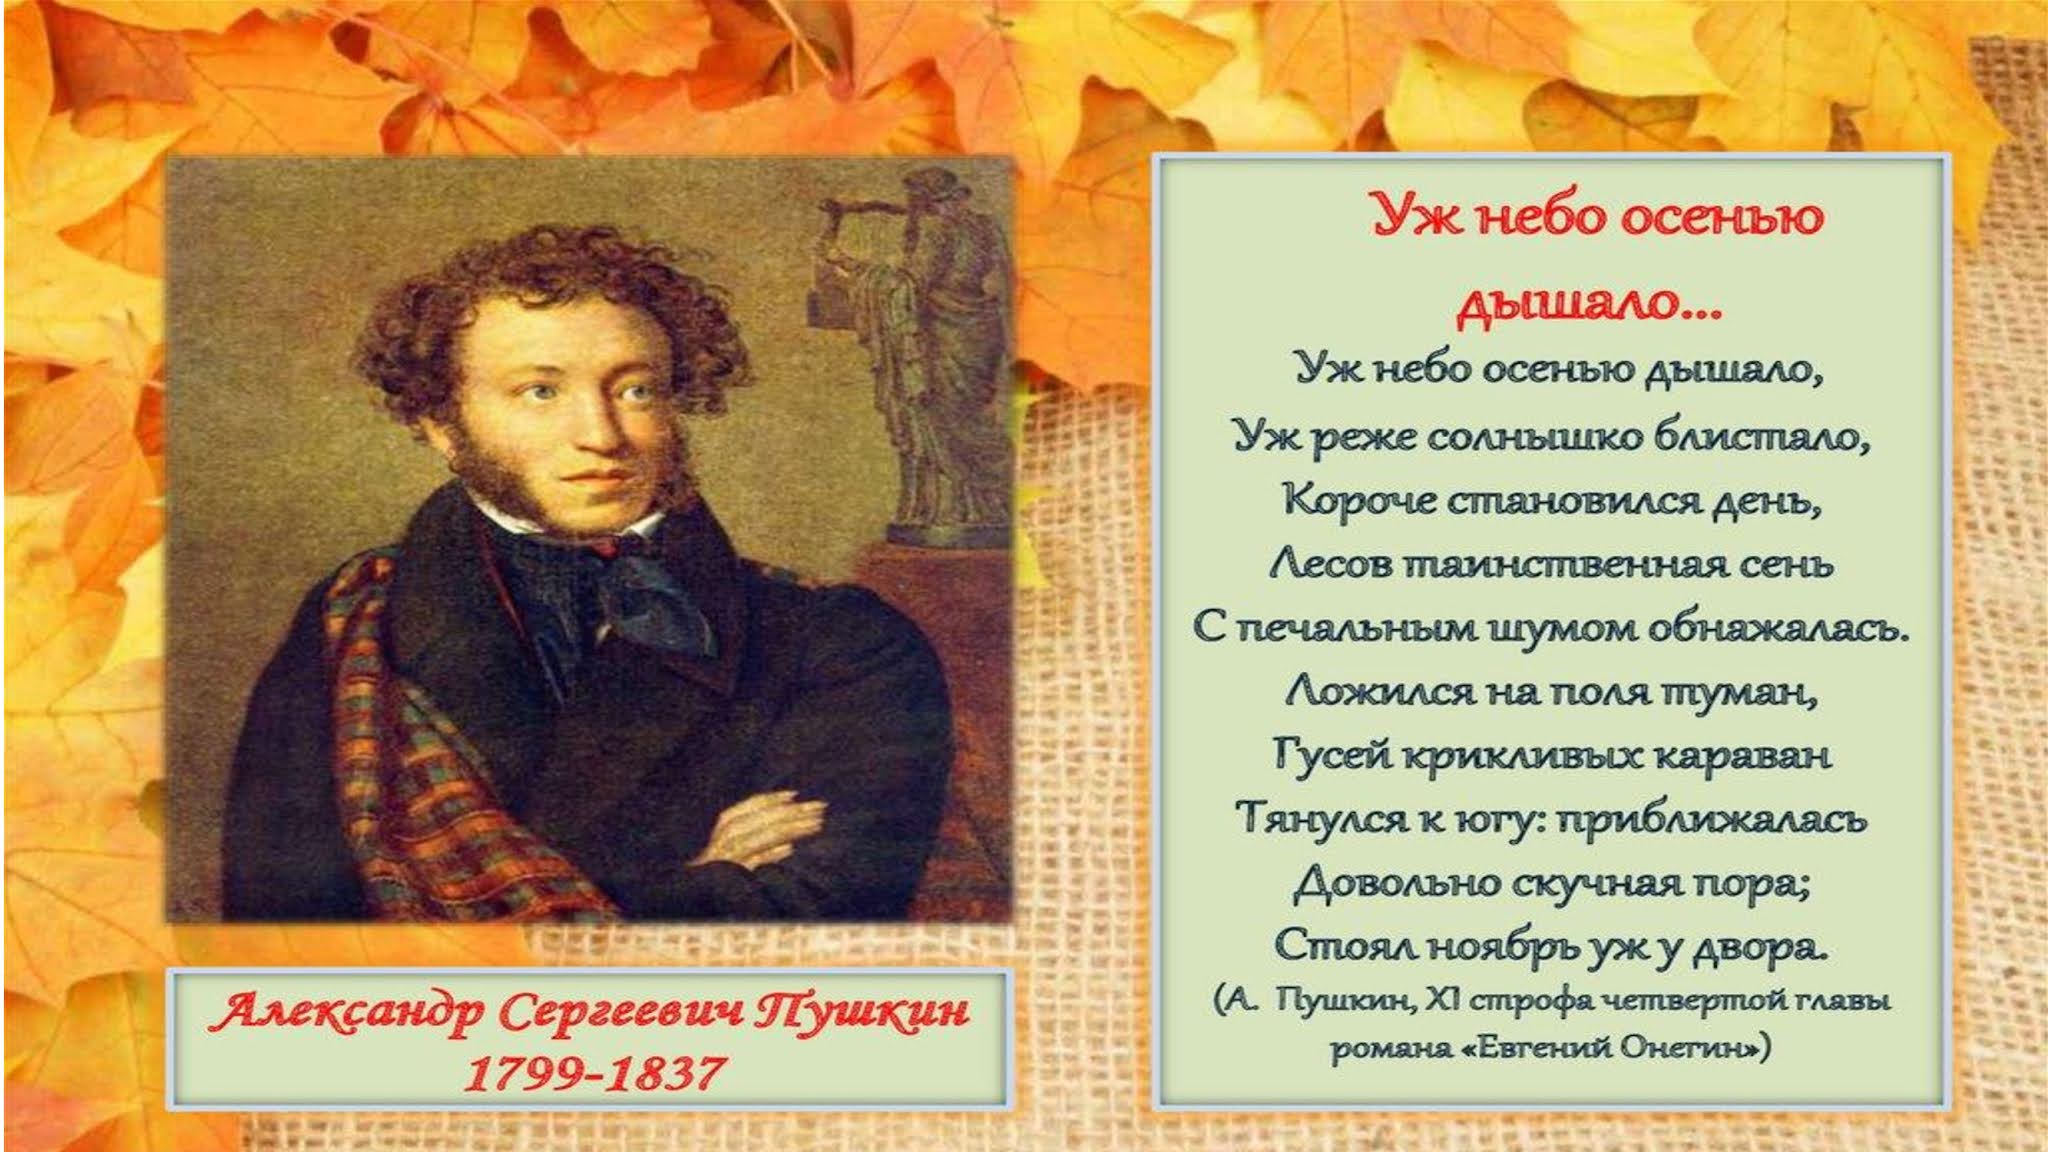 Тема осени пушкина. Стихи Пушкина про осень.